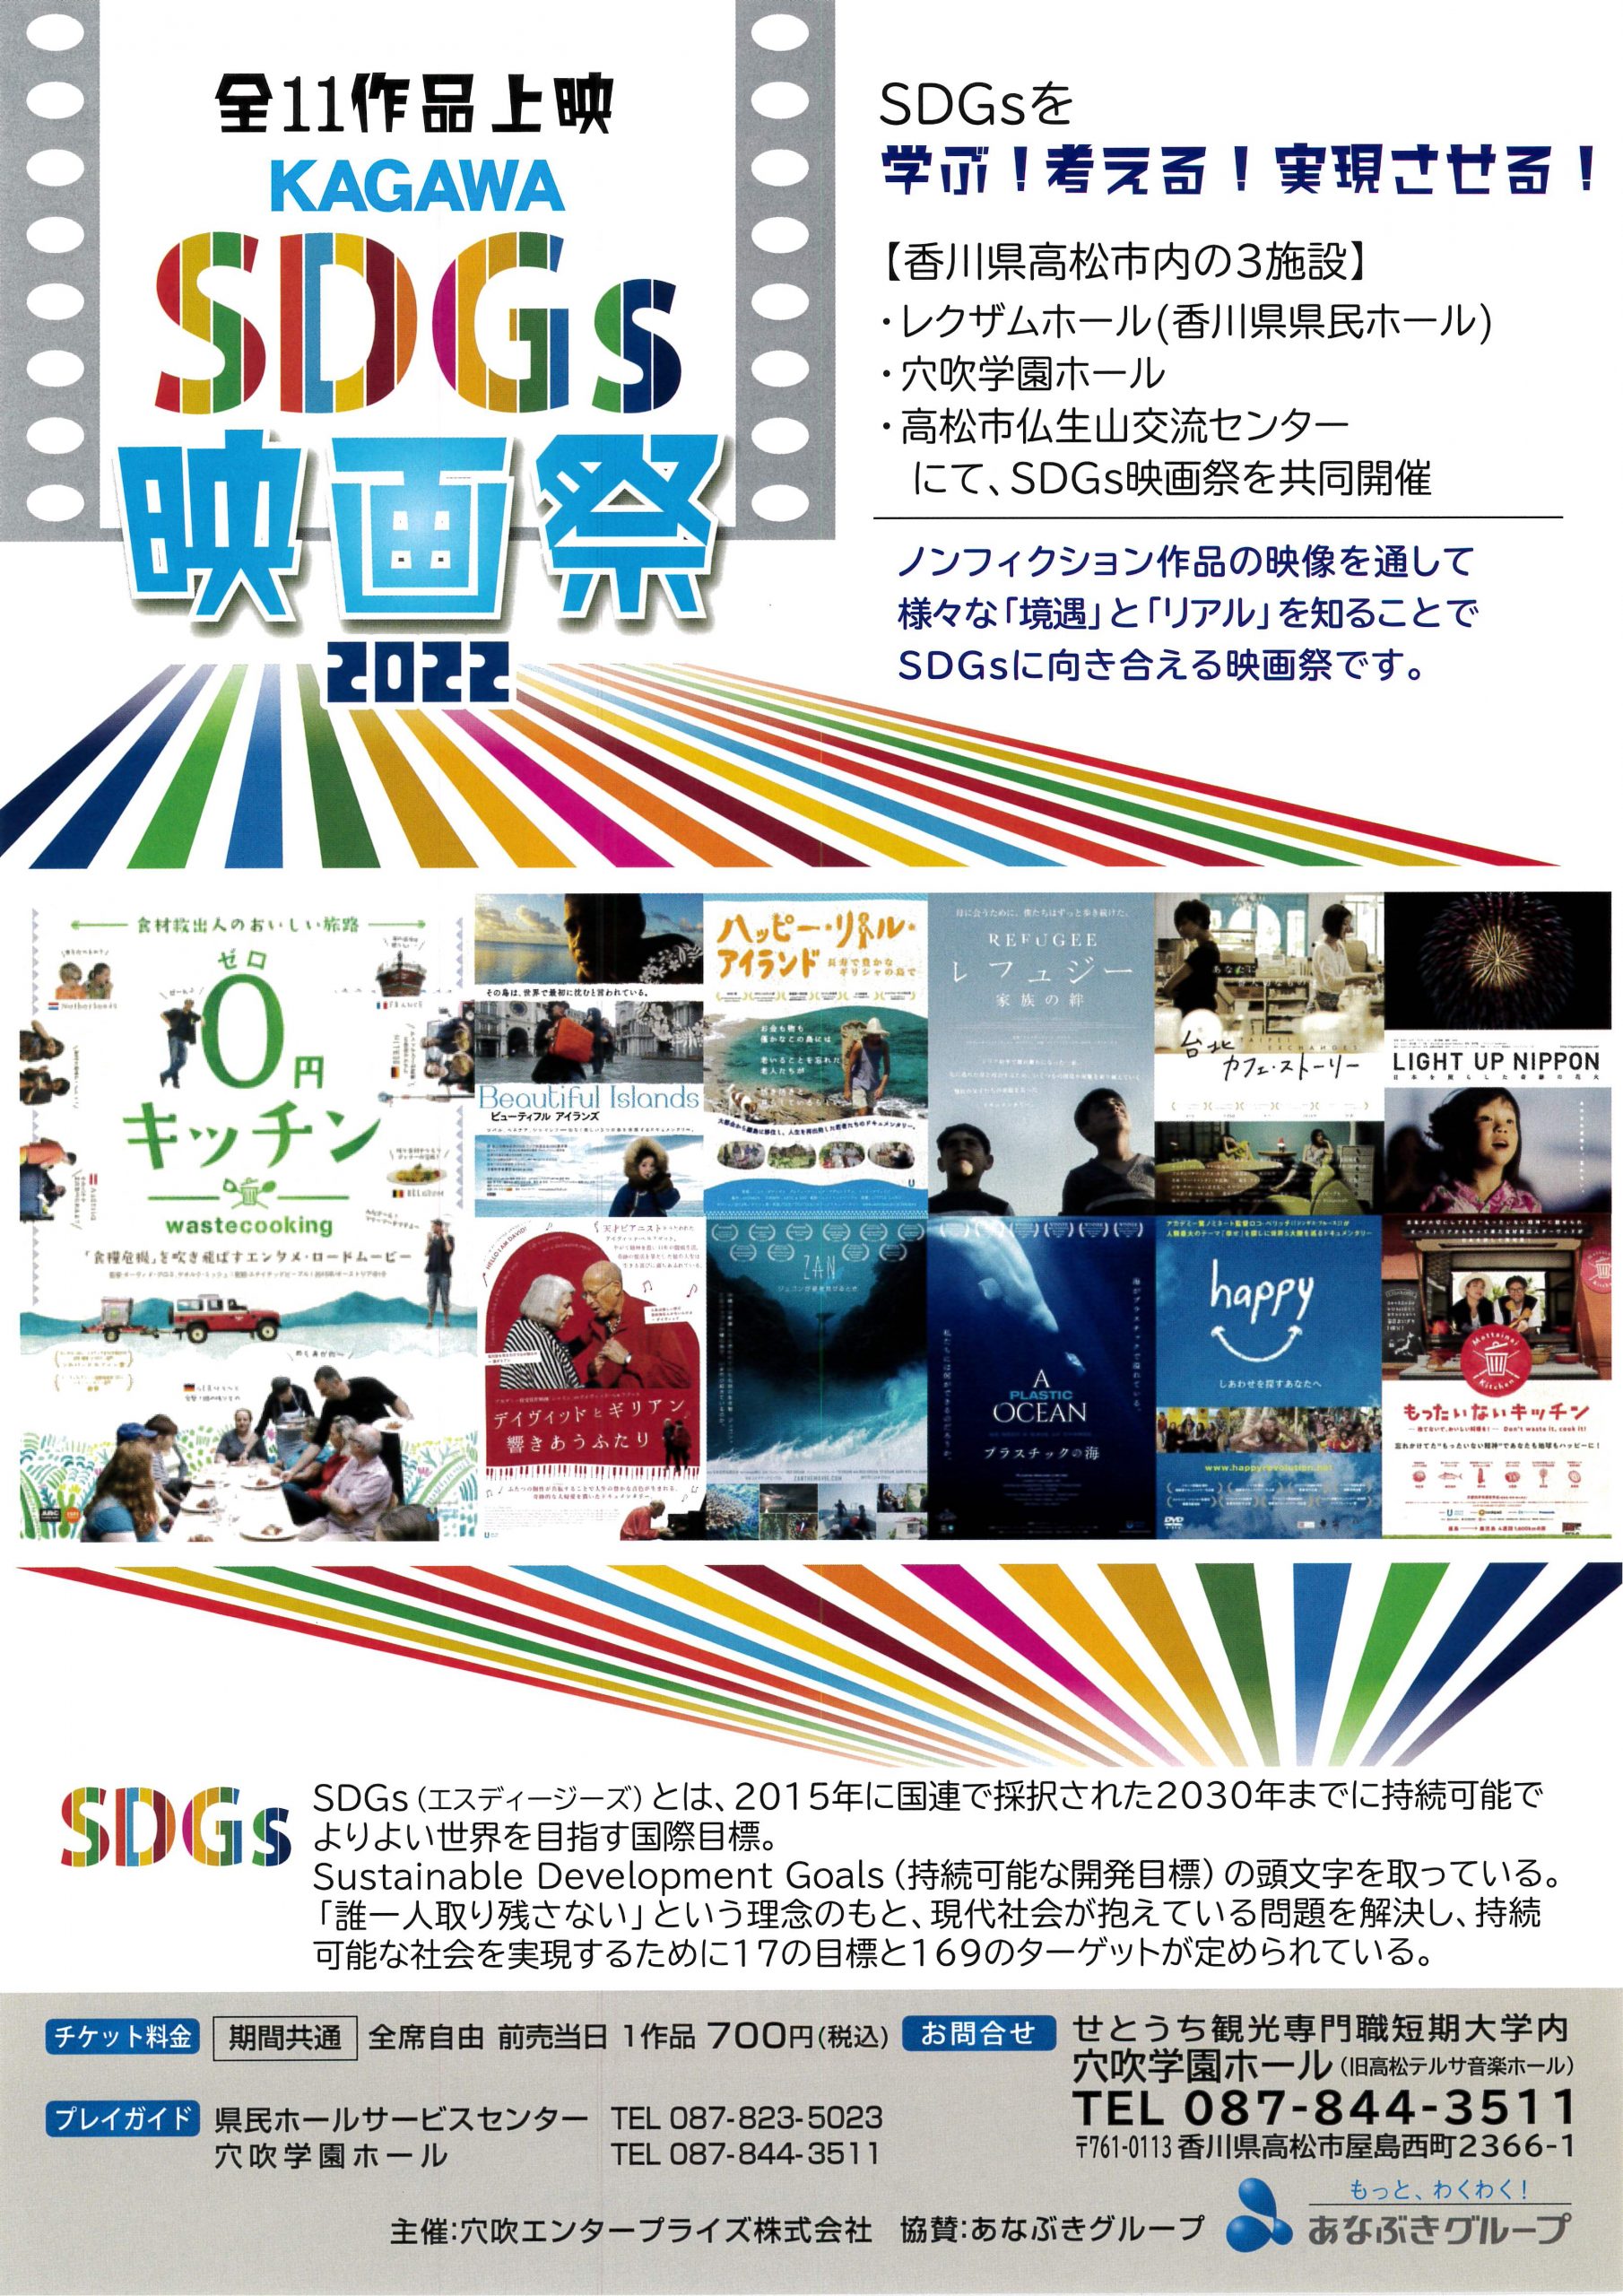 KAGAWA SDGs映画祭２０２２